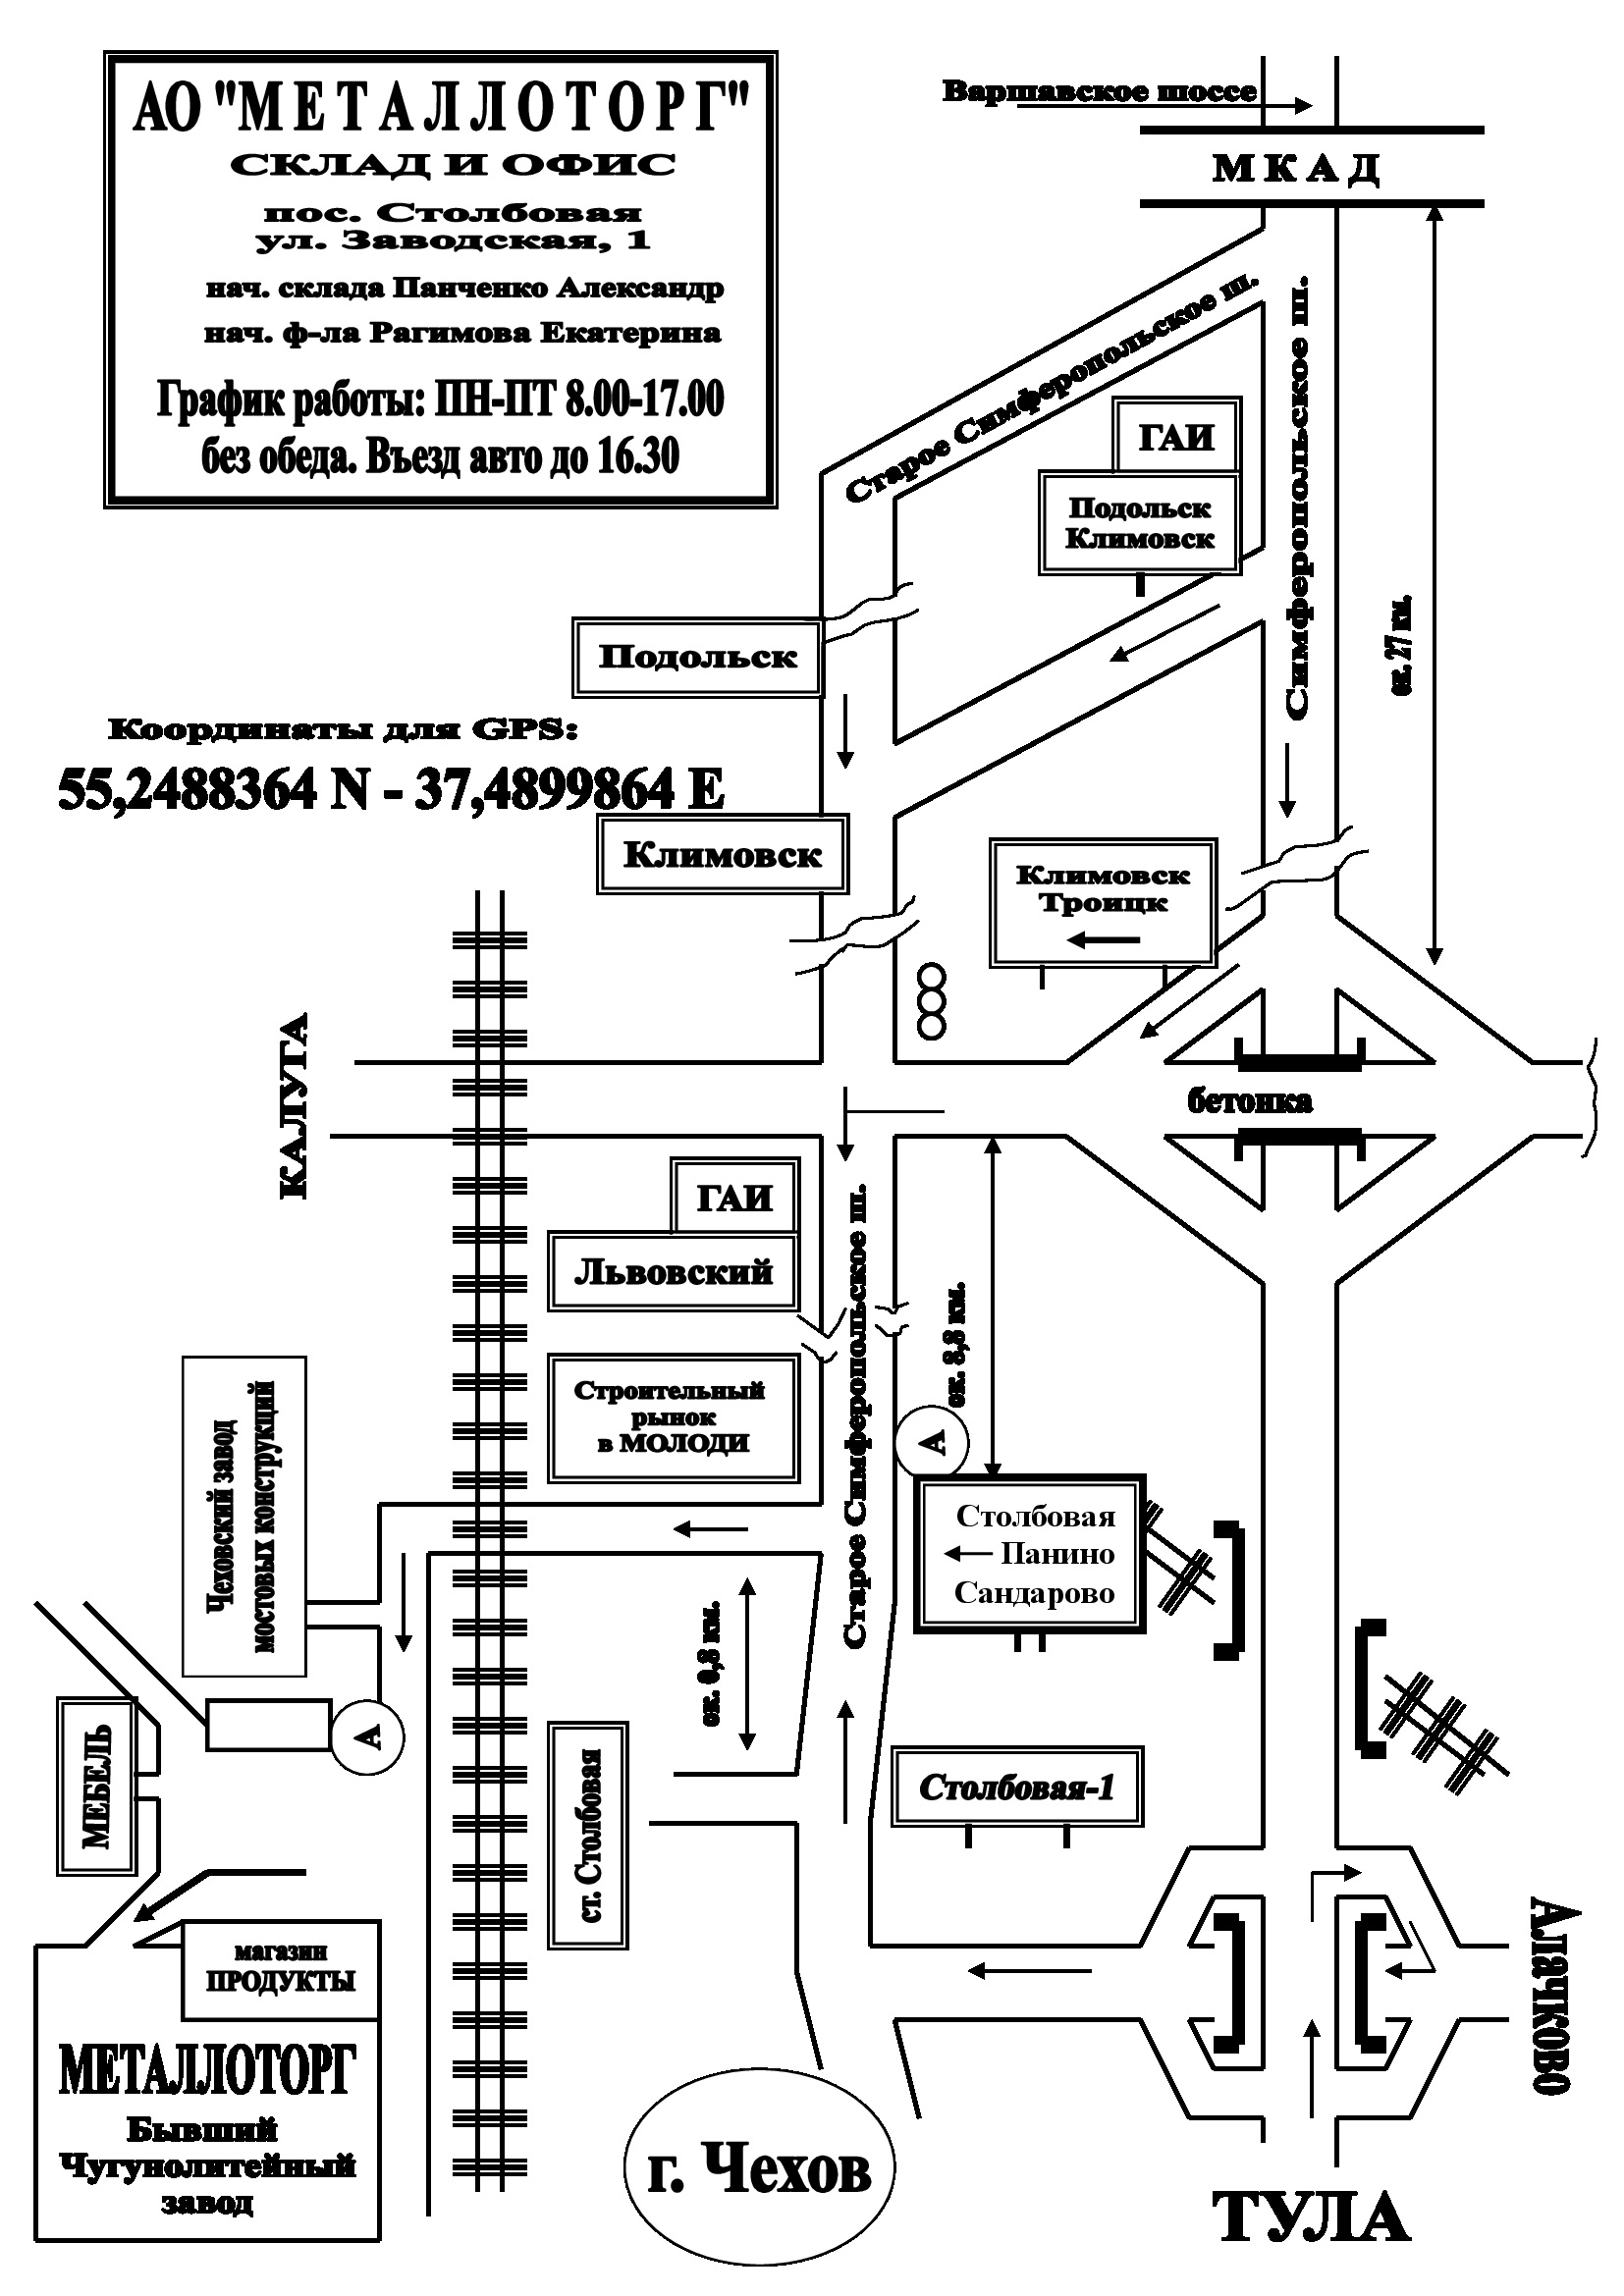 Схема проезда Квадрат Чехов прайс лист скачать цена за метр